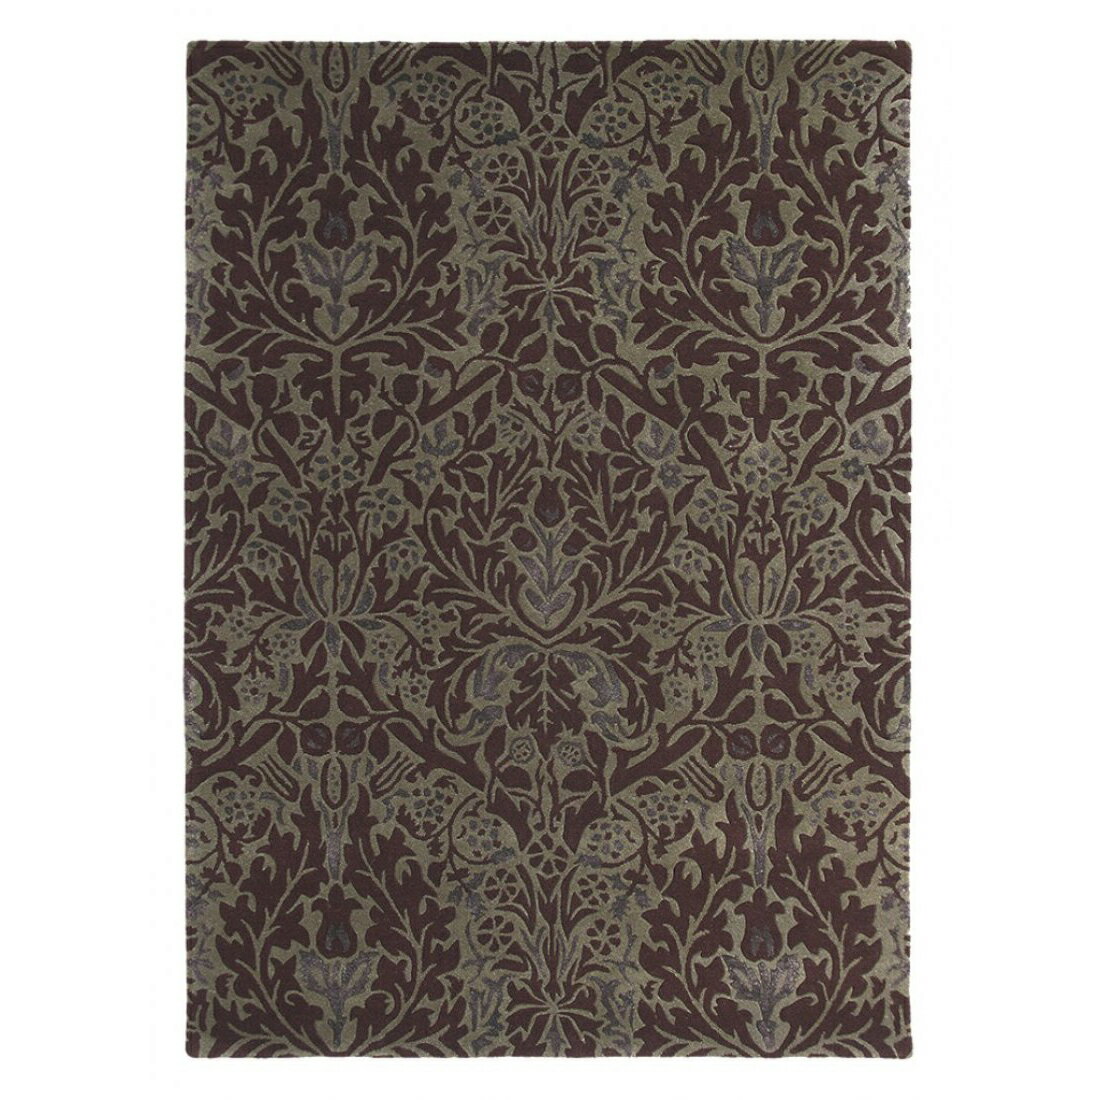 英國Morris&Co羊毛地毯 AUTUMN FLOWERS 27500  古典圖騰 經典優雅